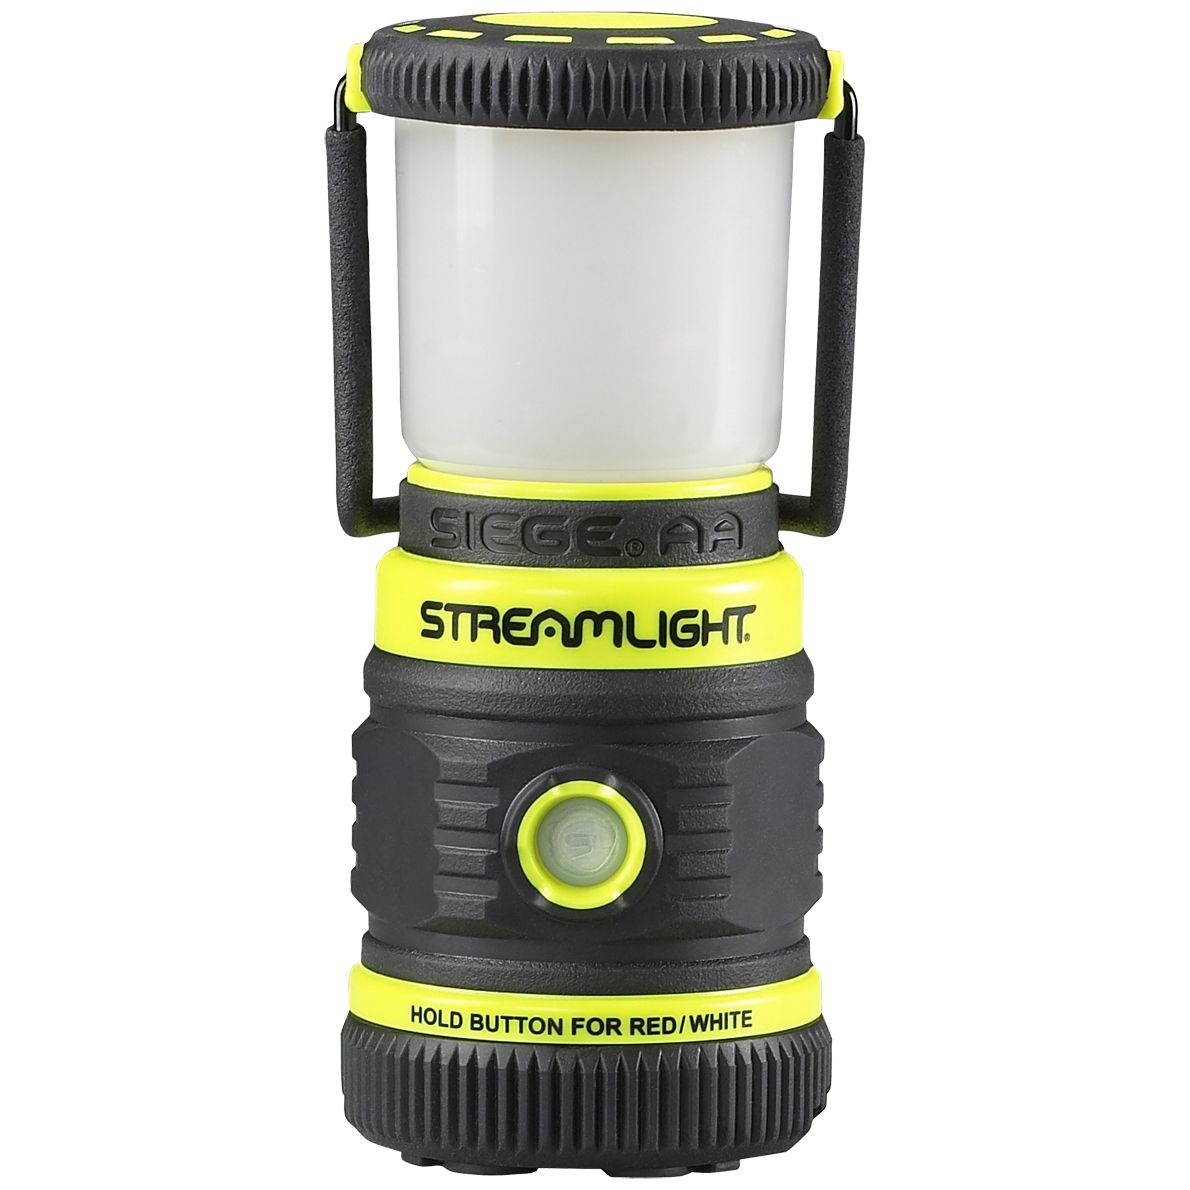 Streamlight Siege AA Lampe - extrem robuste & wasserfeste Outdoor-Laterne - taktische Leuchte mit 200 Lumen - Gelb